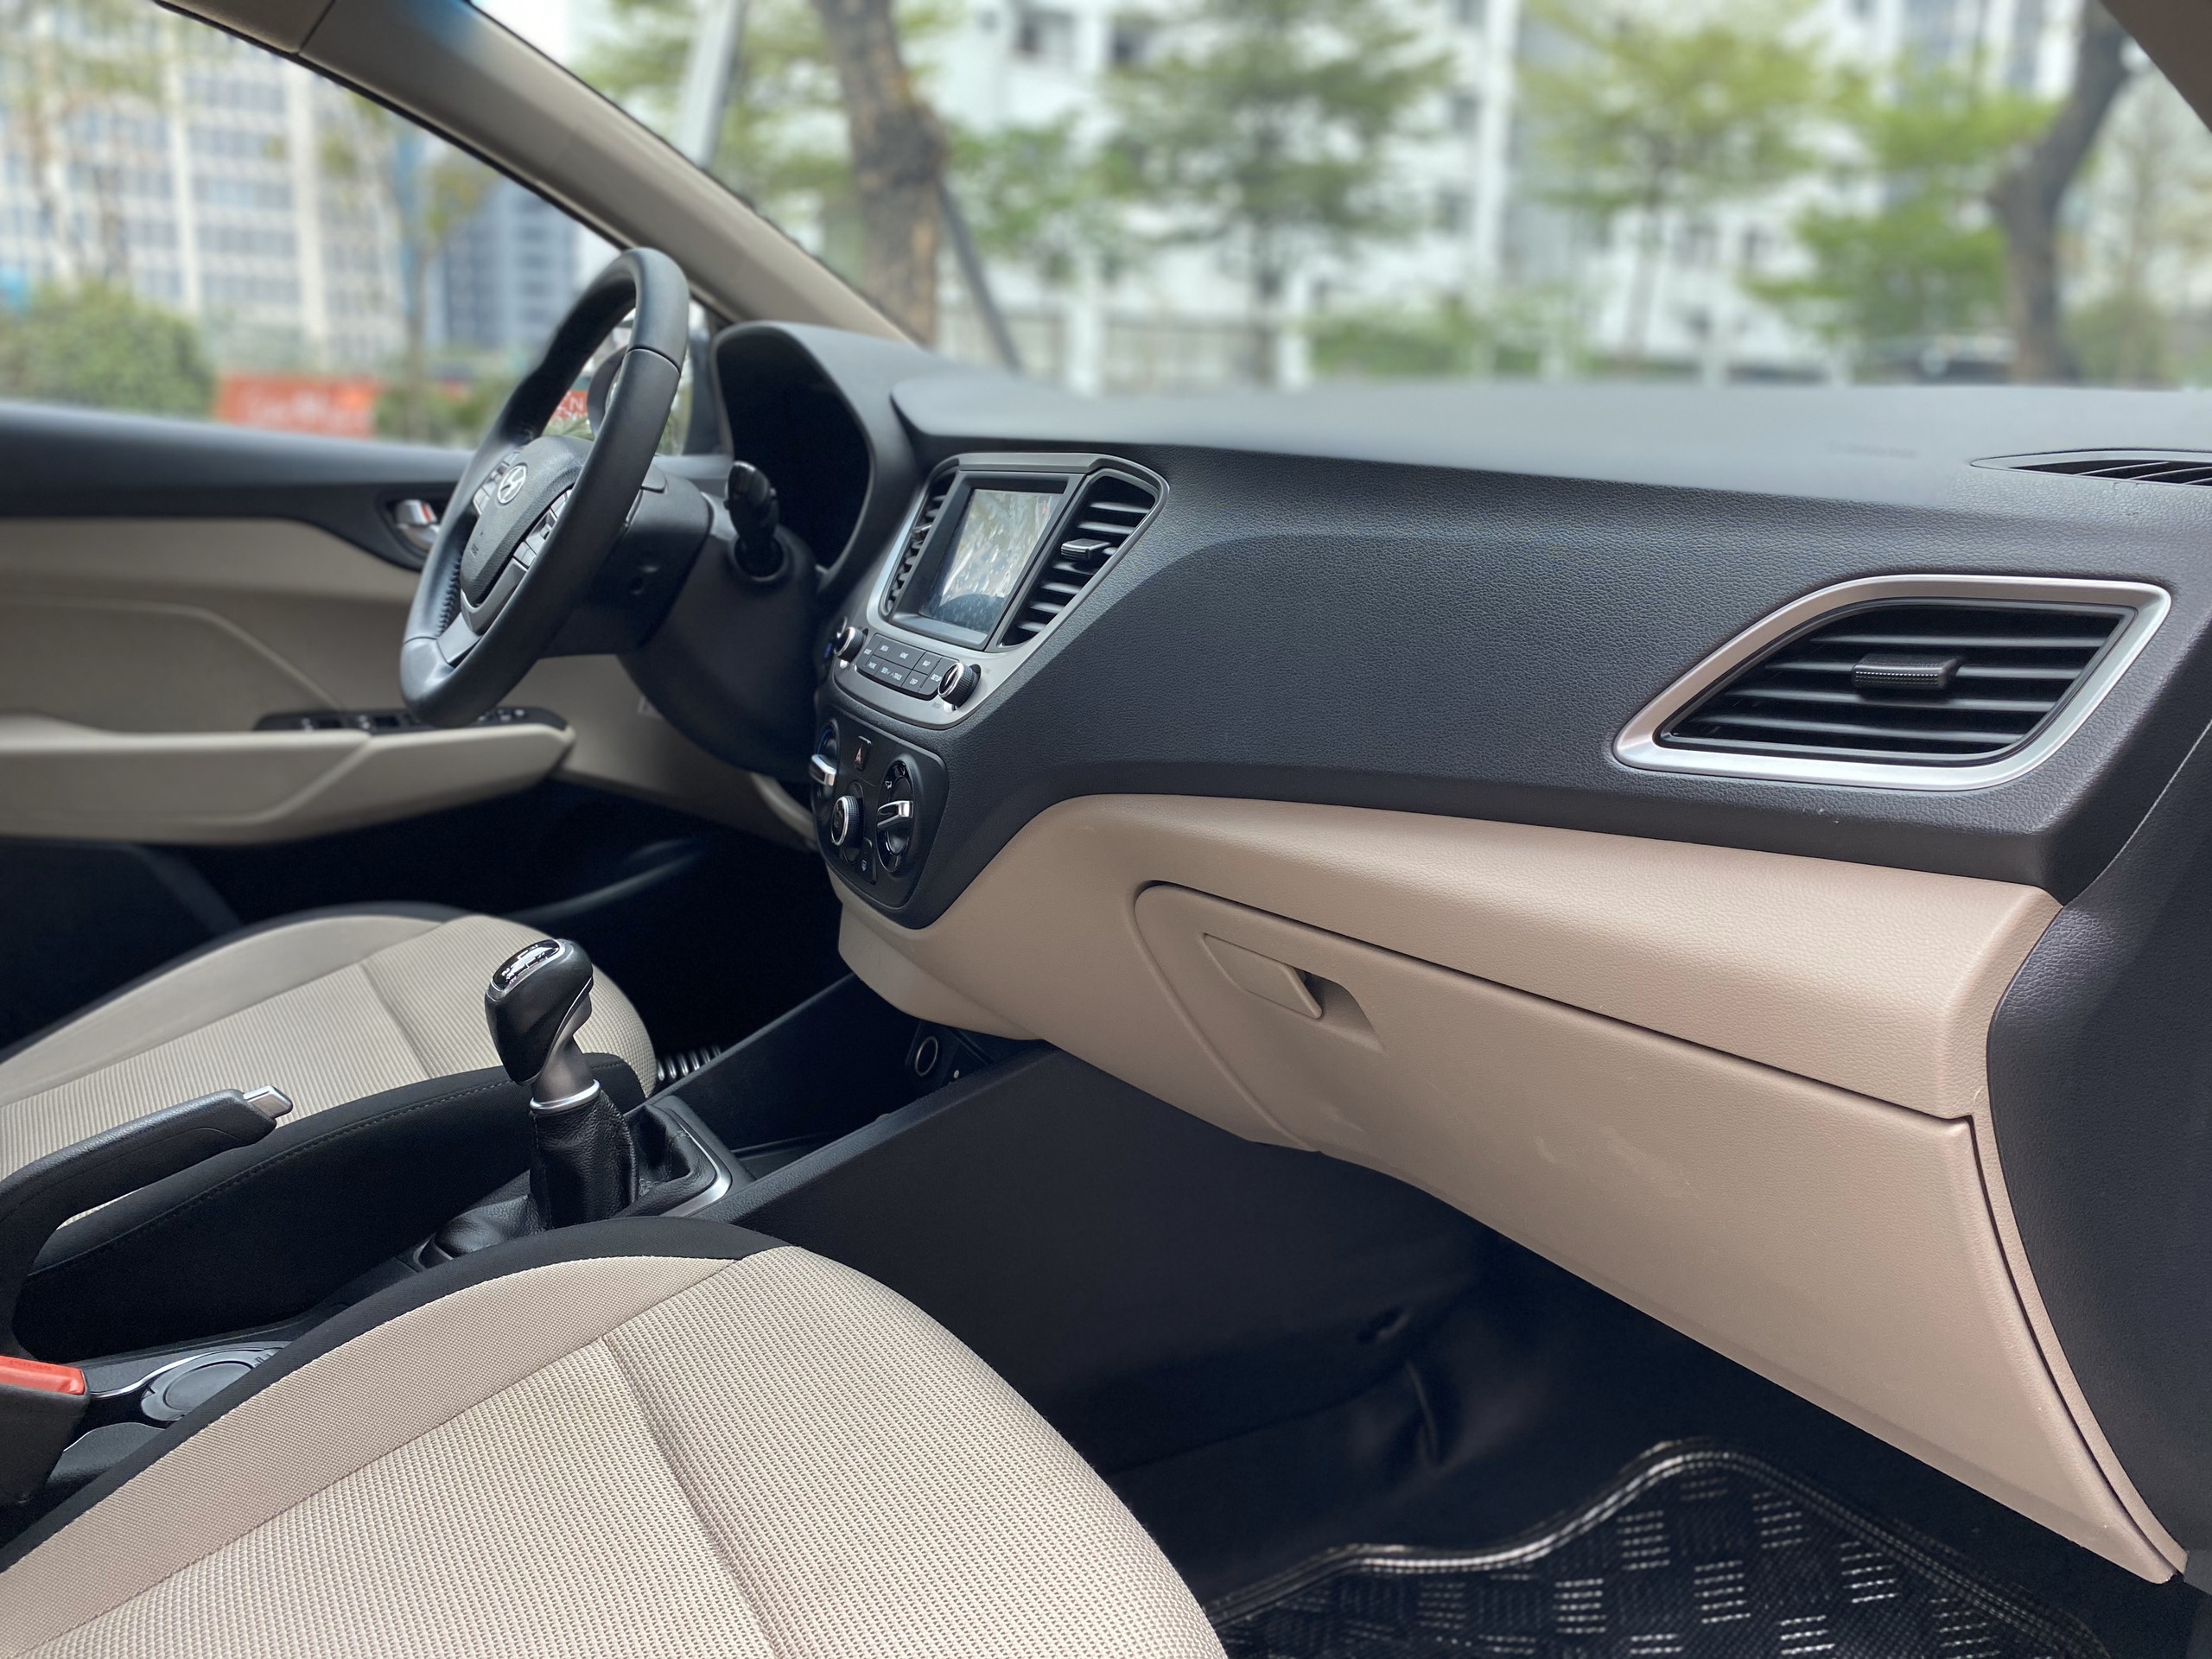 Hyundai Accent 1.4MT 2019 - 8